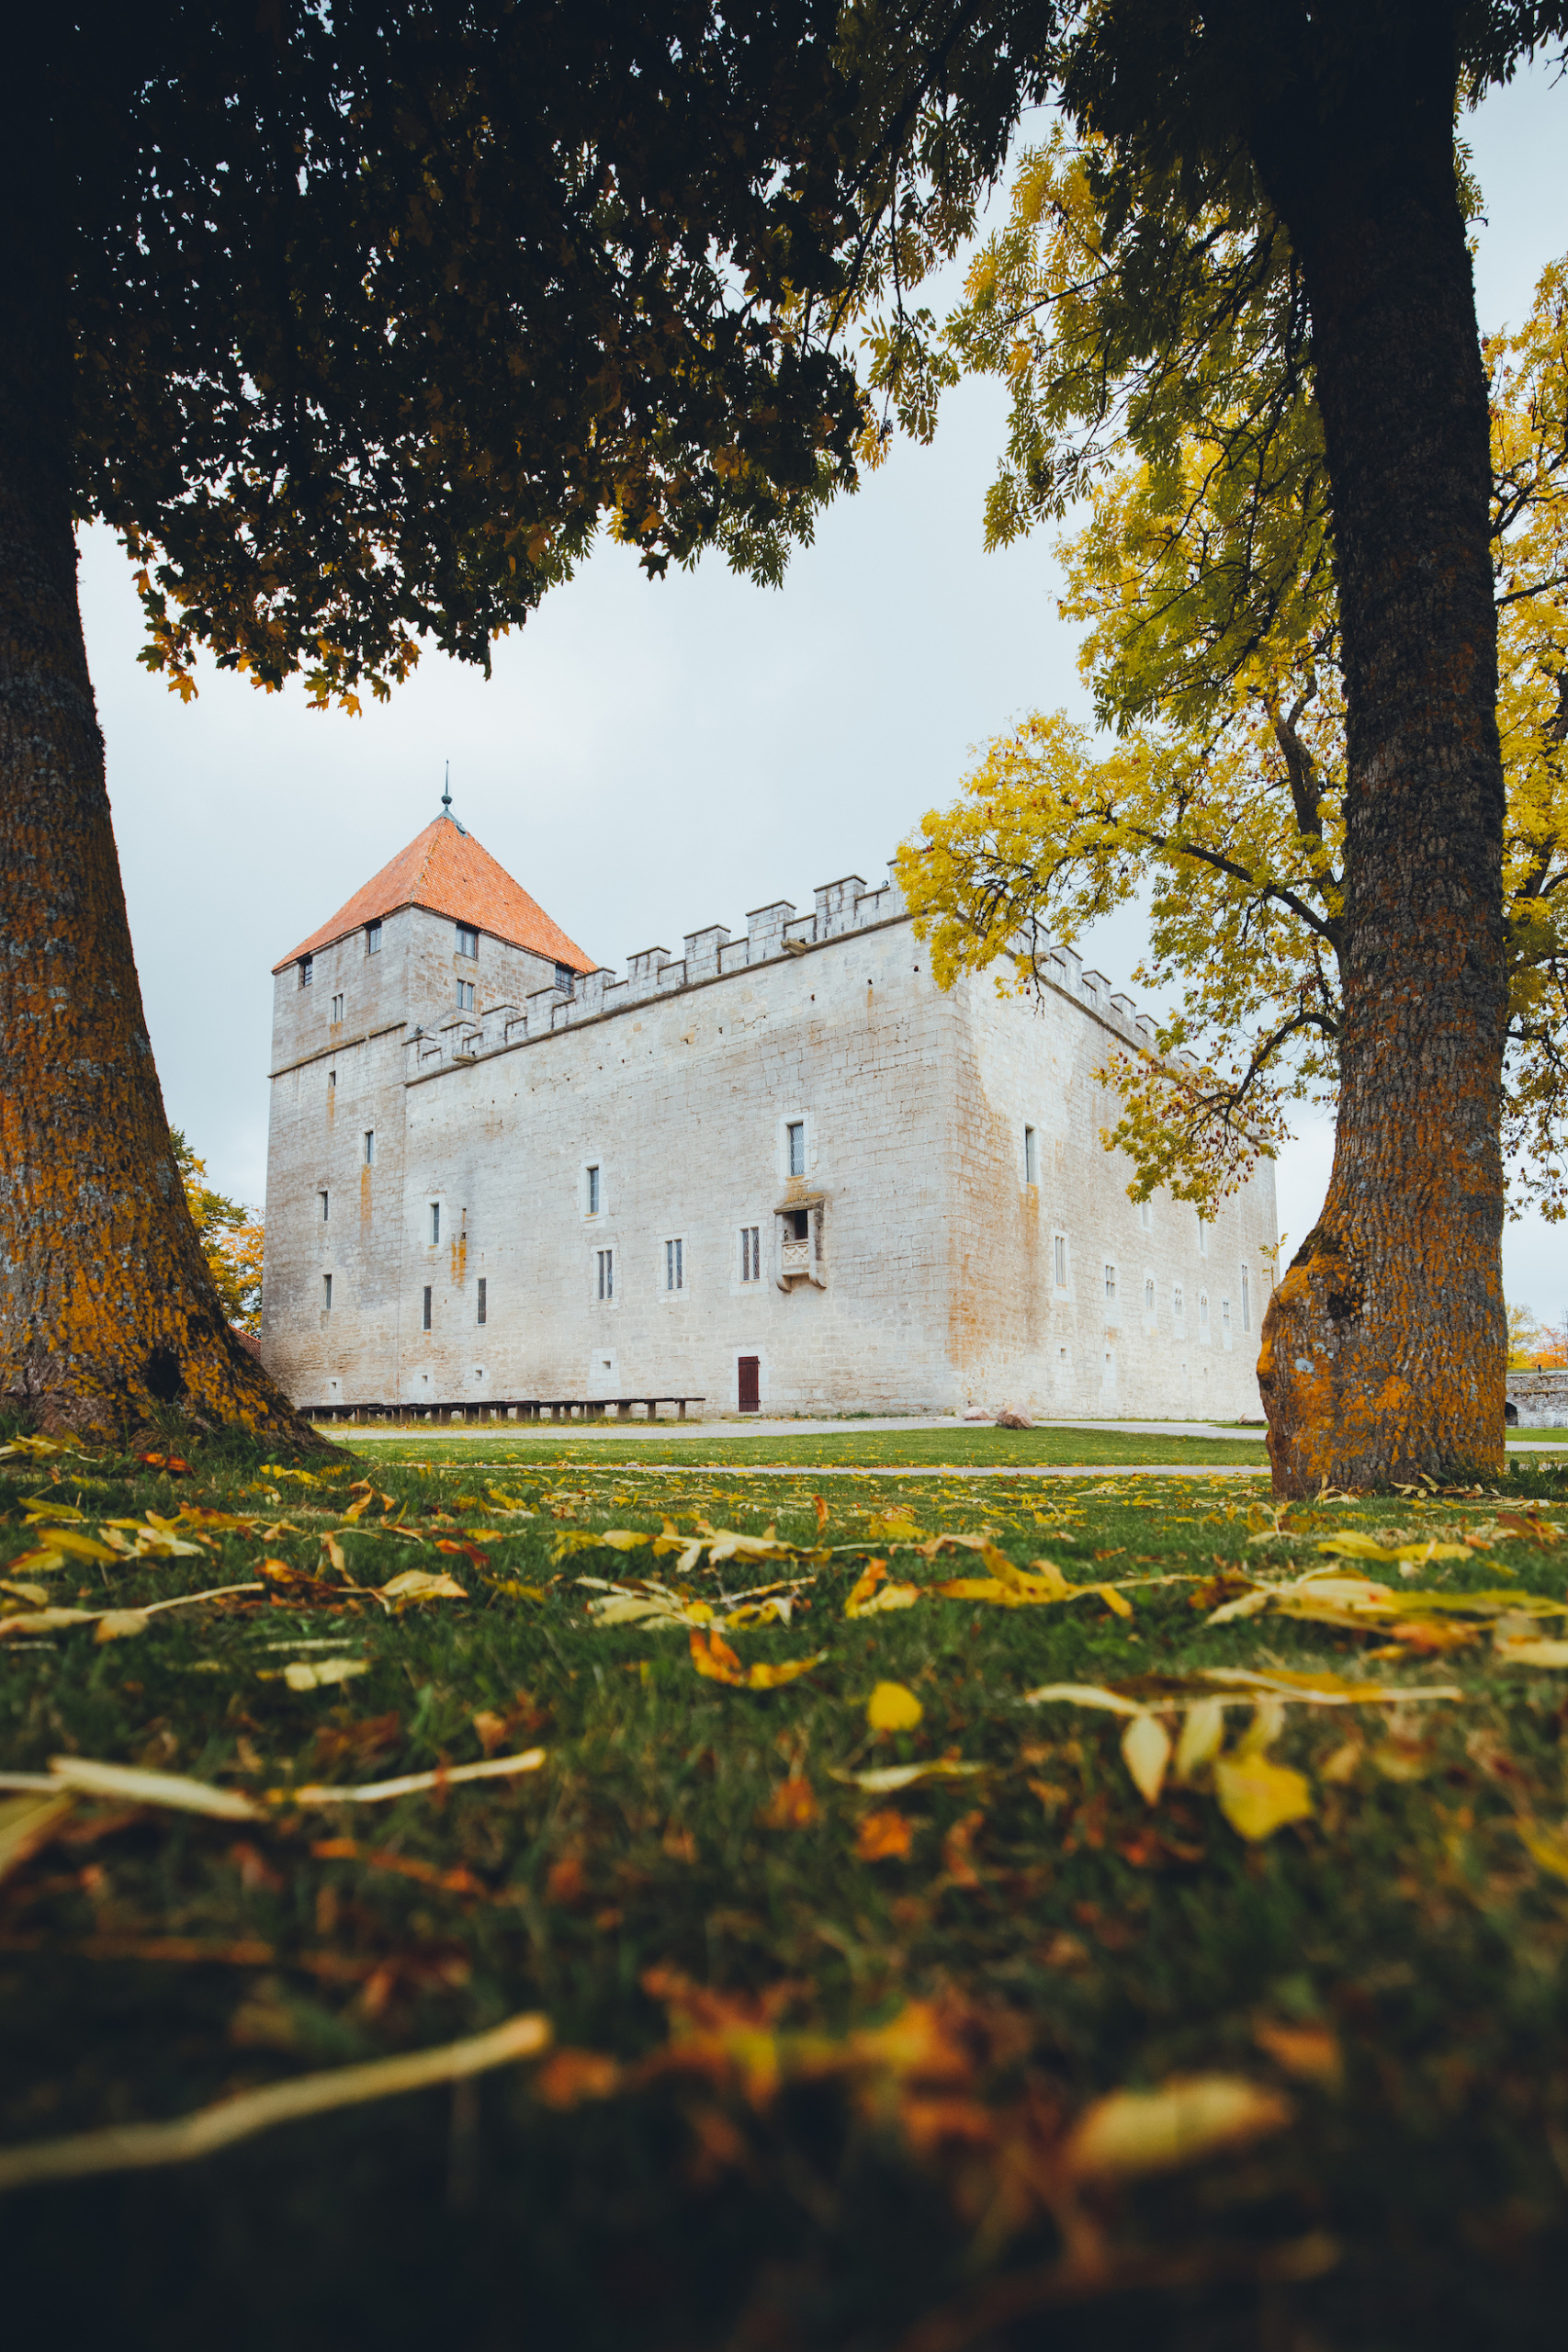 Burg in Kuressaare in Estland, eine besonders schöne Hochzeitslocation